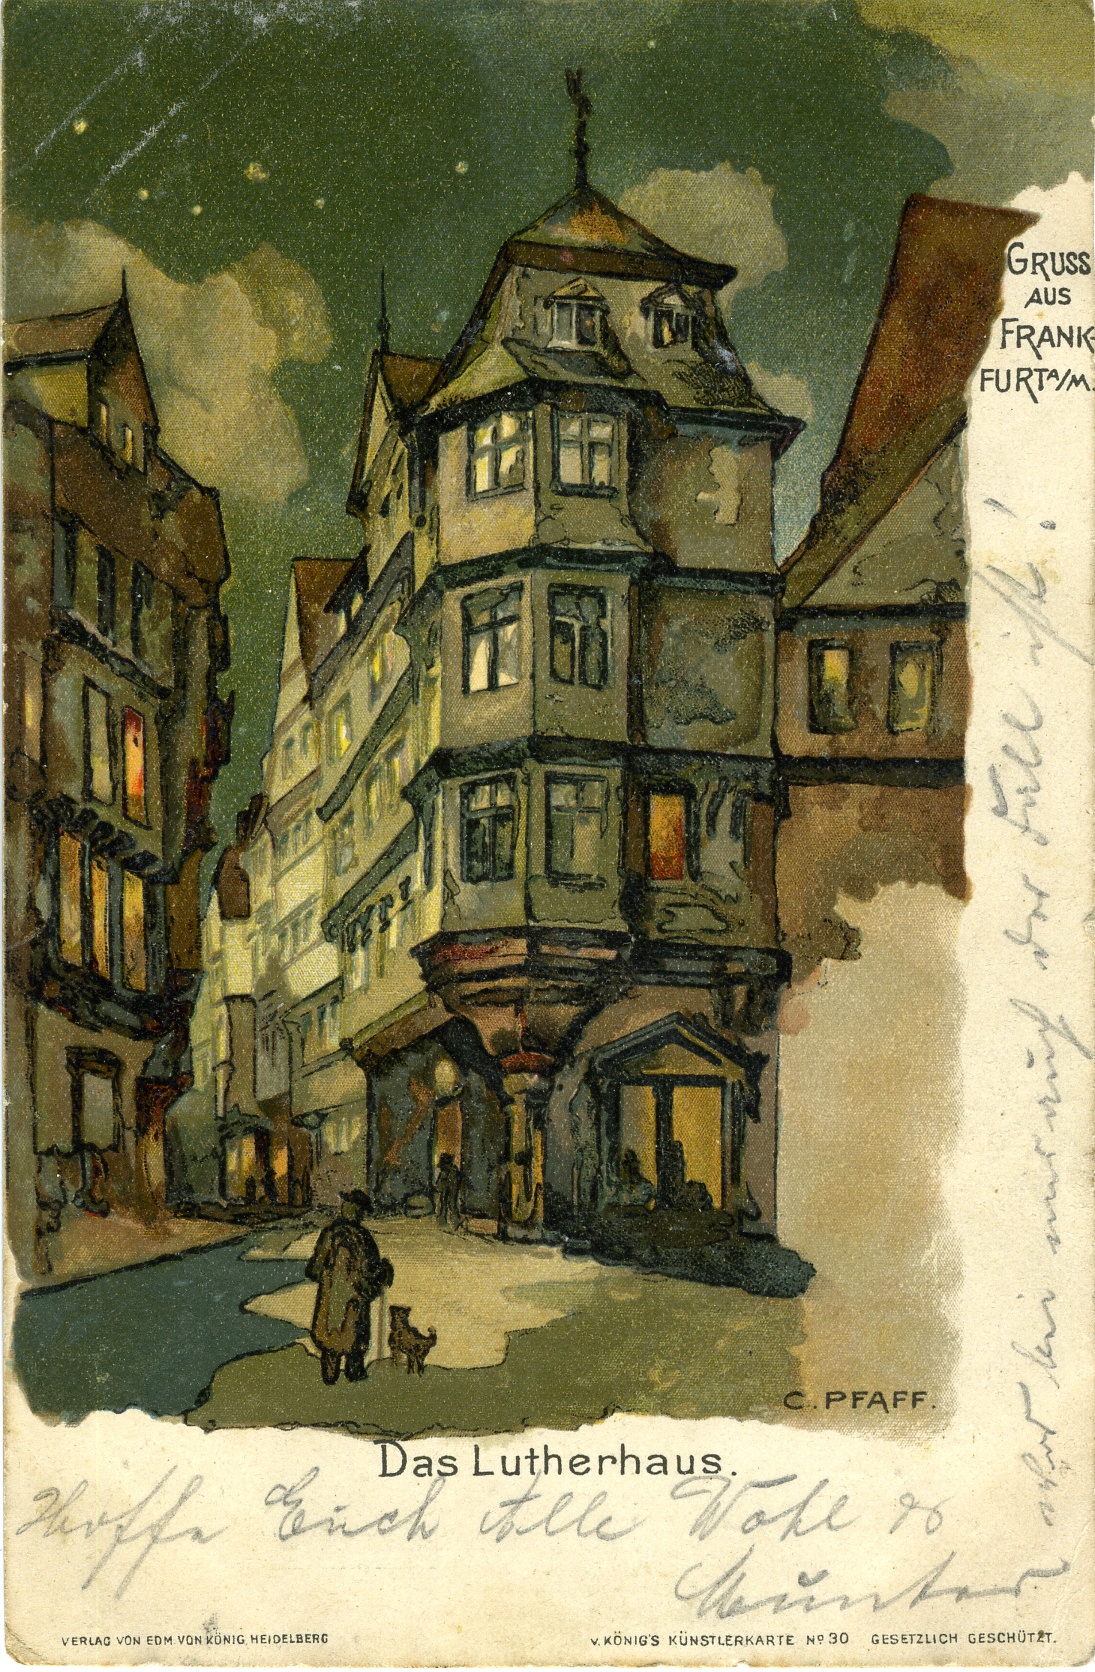 Postkarte Frankfurt am Main 1907 (Historisches Museum der Pfalz, Speyer CC BY)